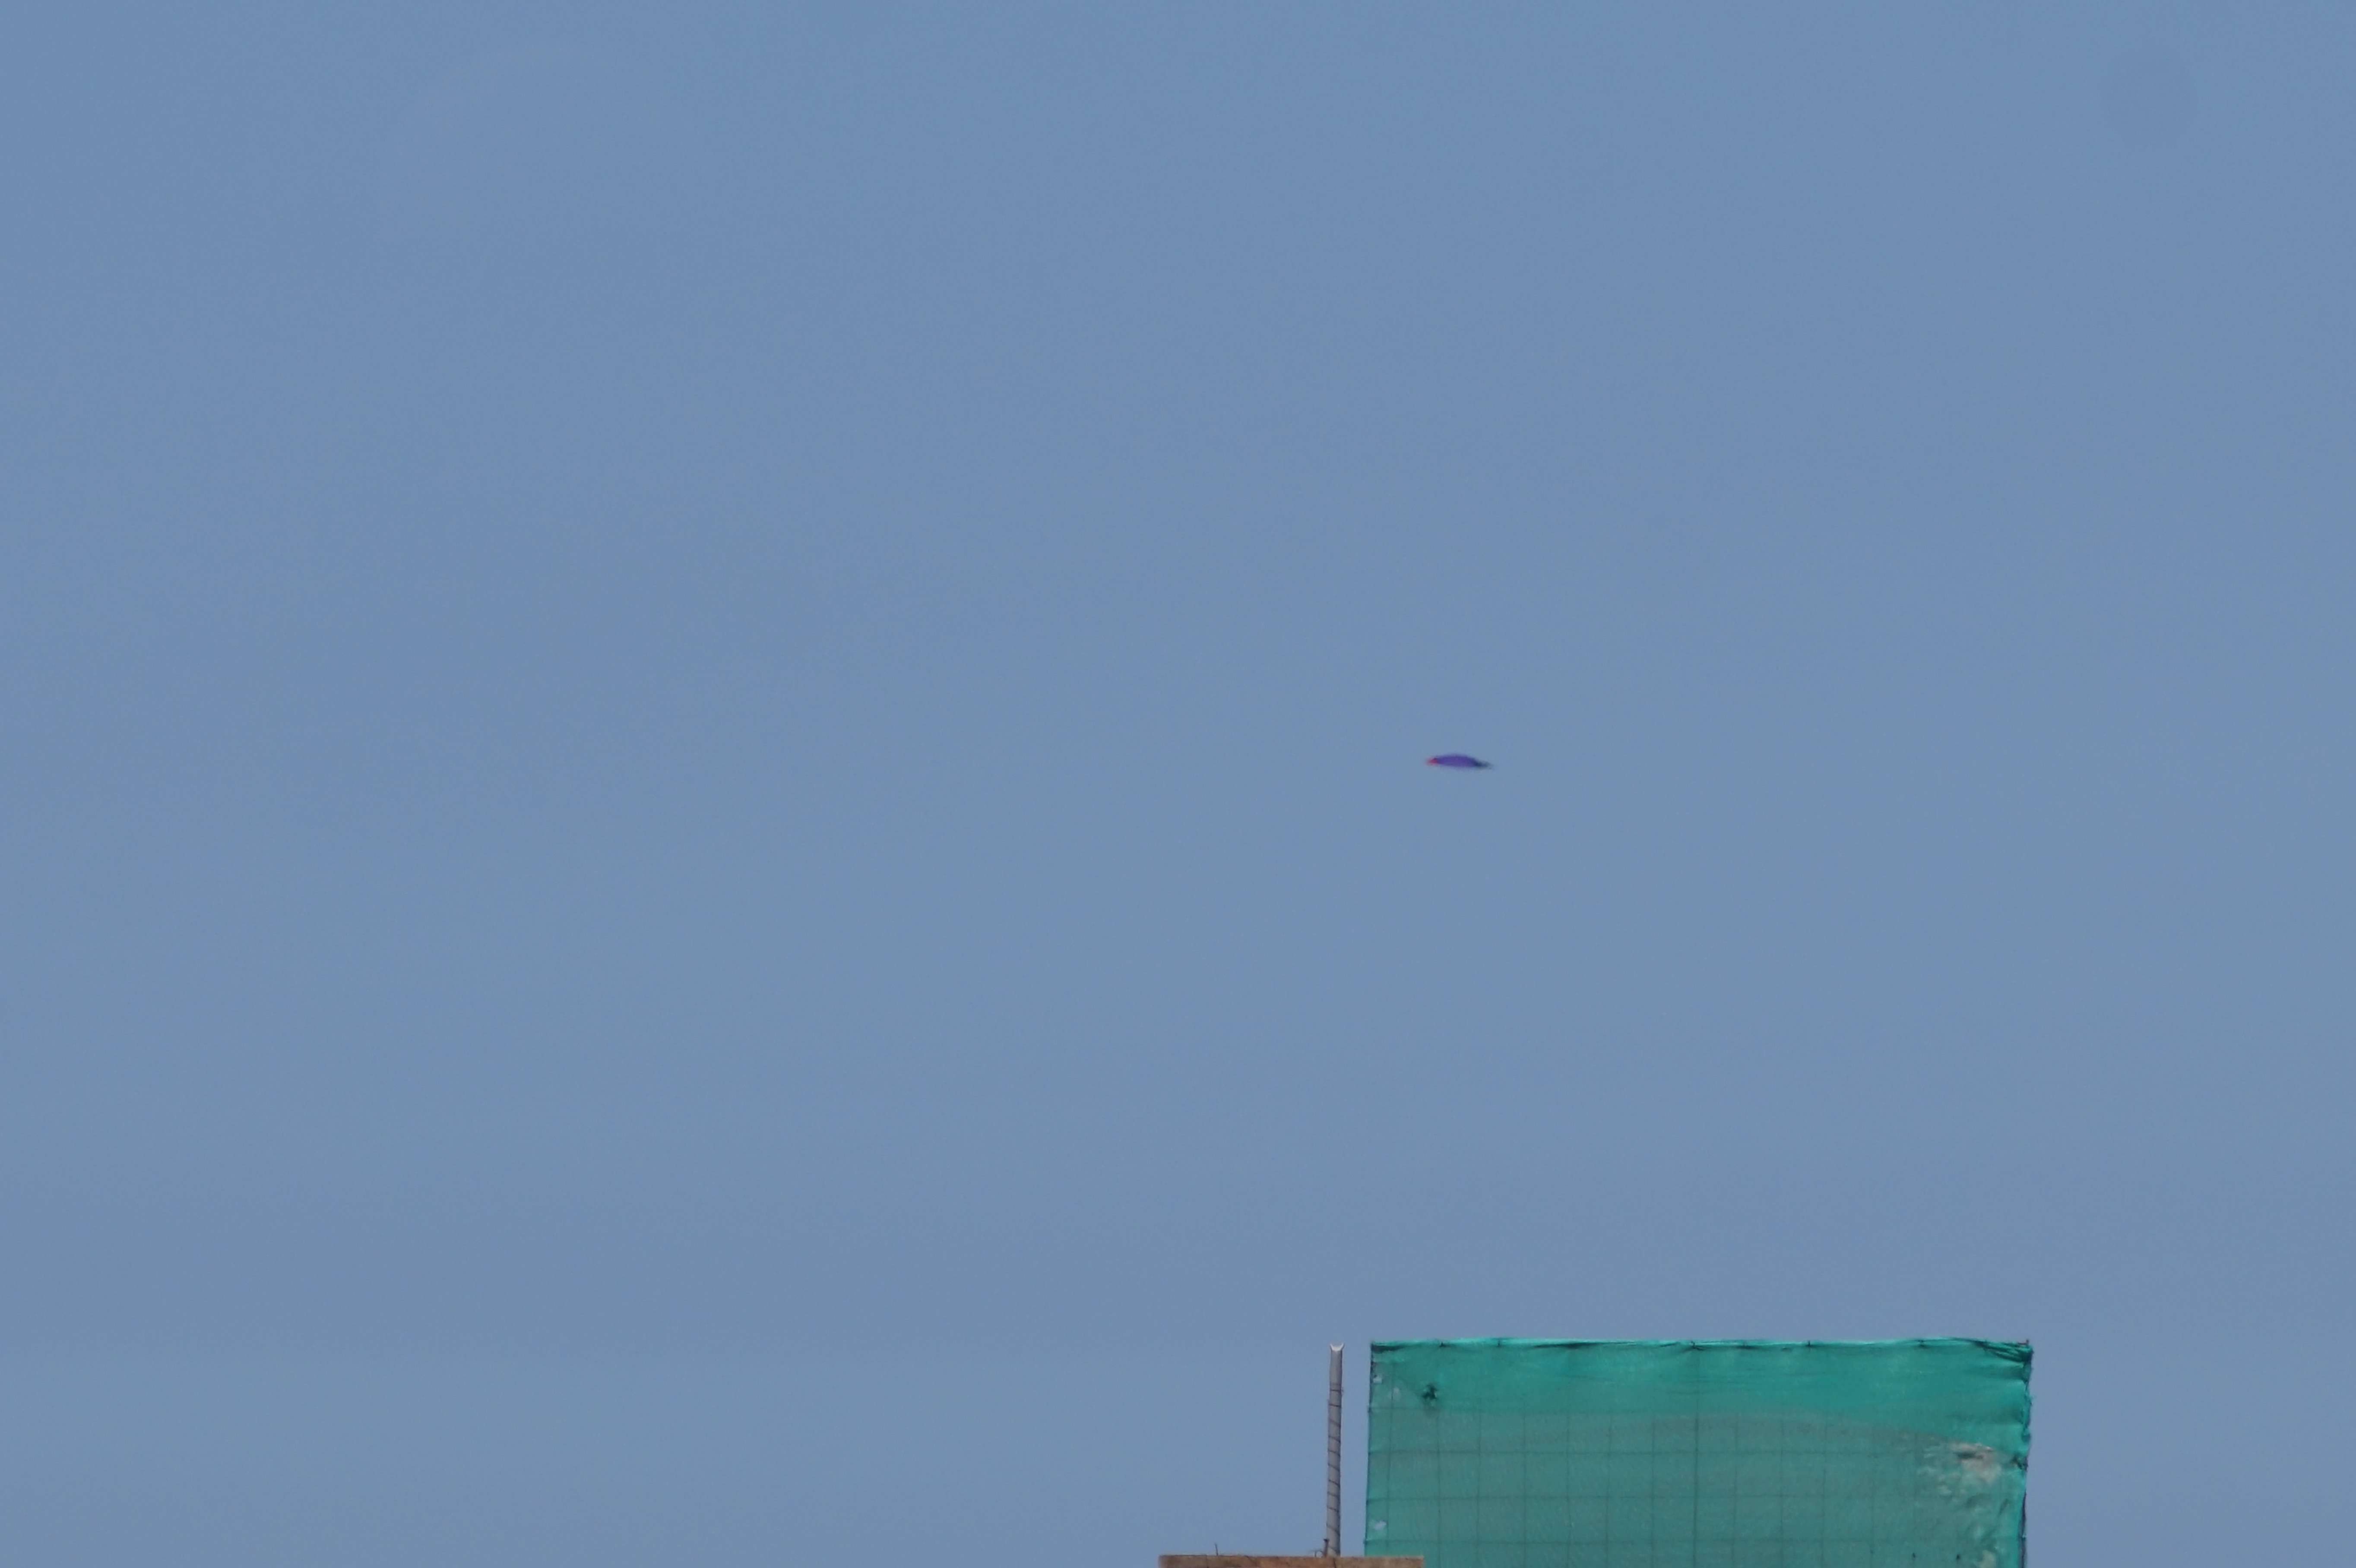 Fotografía original de objeto volador sobre Miraflores.